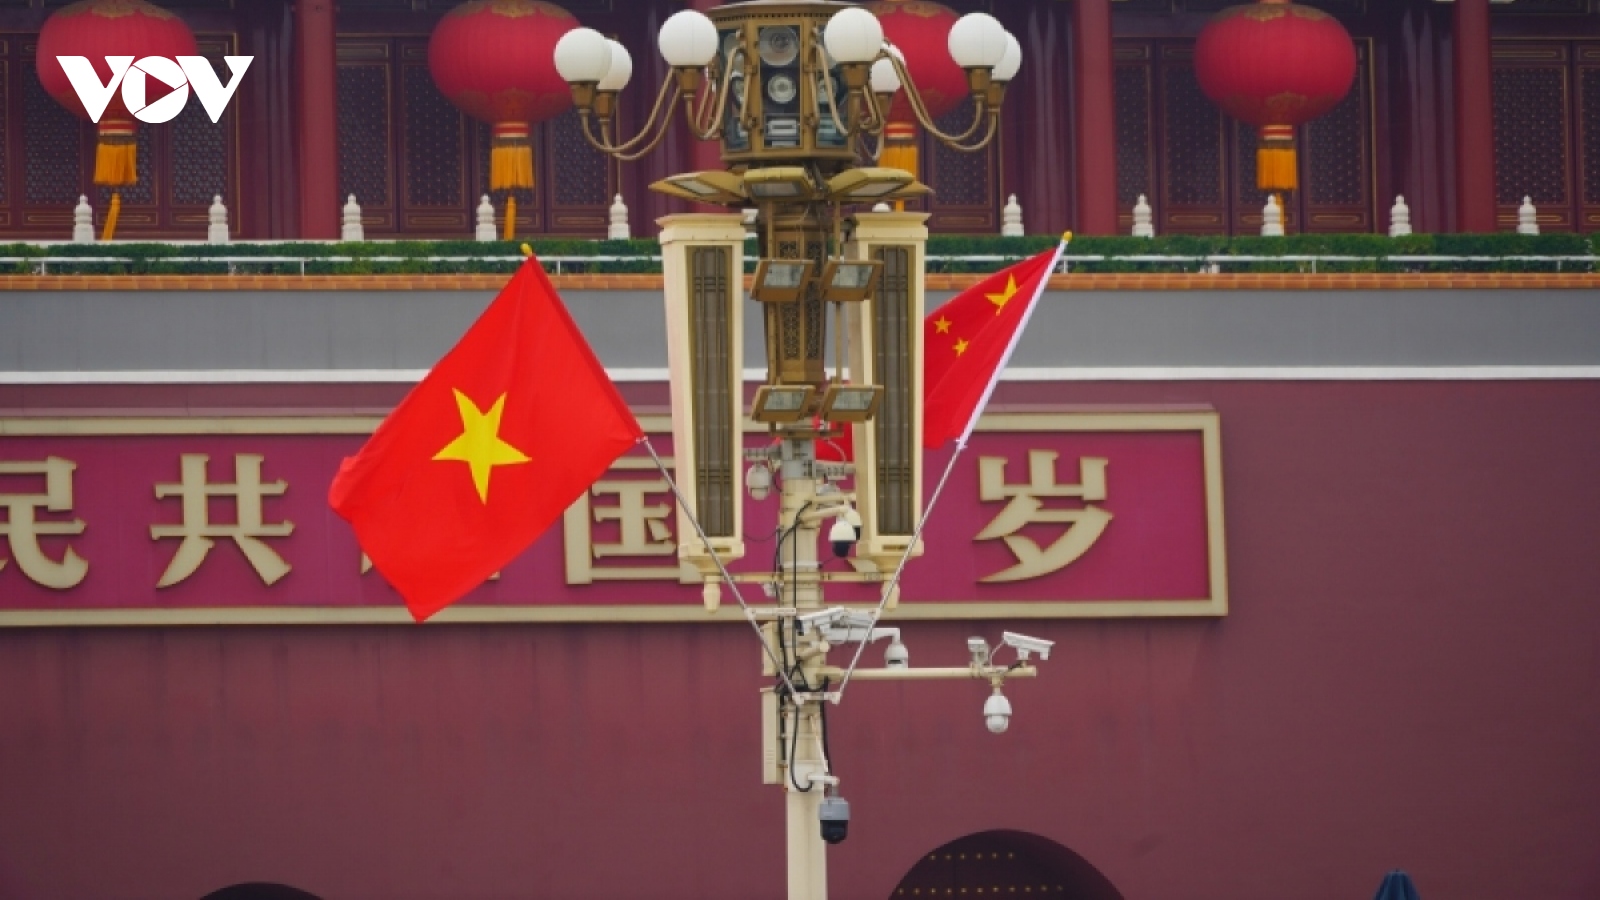 Truyền thông Trung Quốc tiếp tục phân tích chuyến thăm của Tổng Bí thư Việt Nam